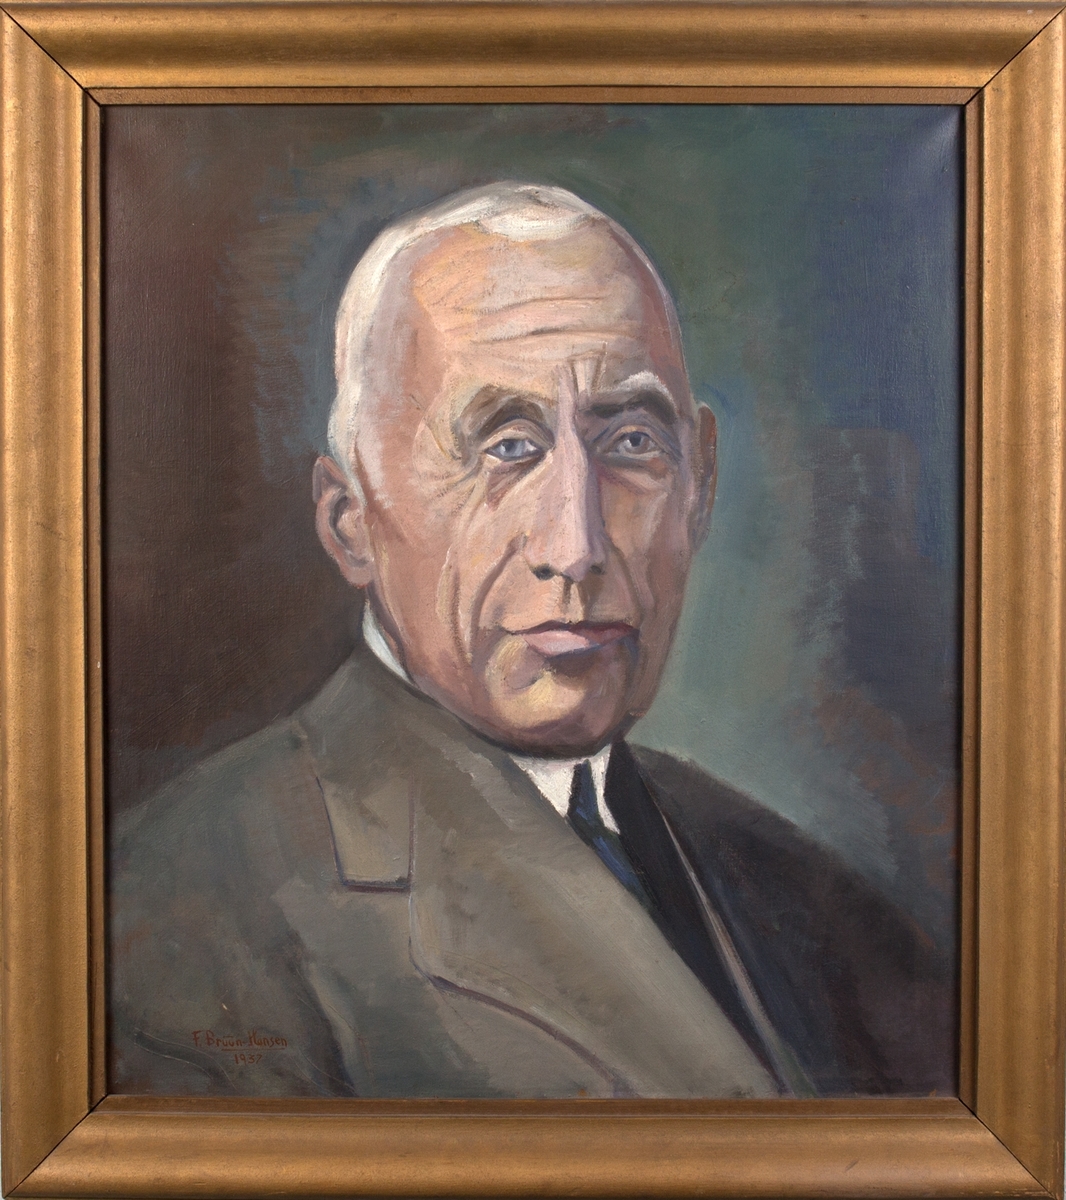 Brystportrett av Roald Amundsen. Han er hvit i håret, og er iført lys dressjakke, hvit skjorte og blått slips.